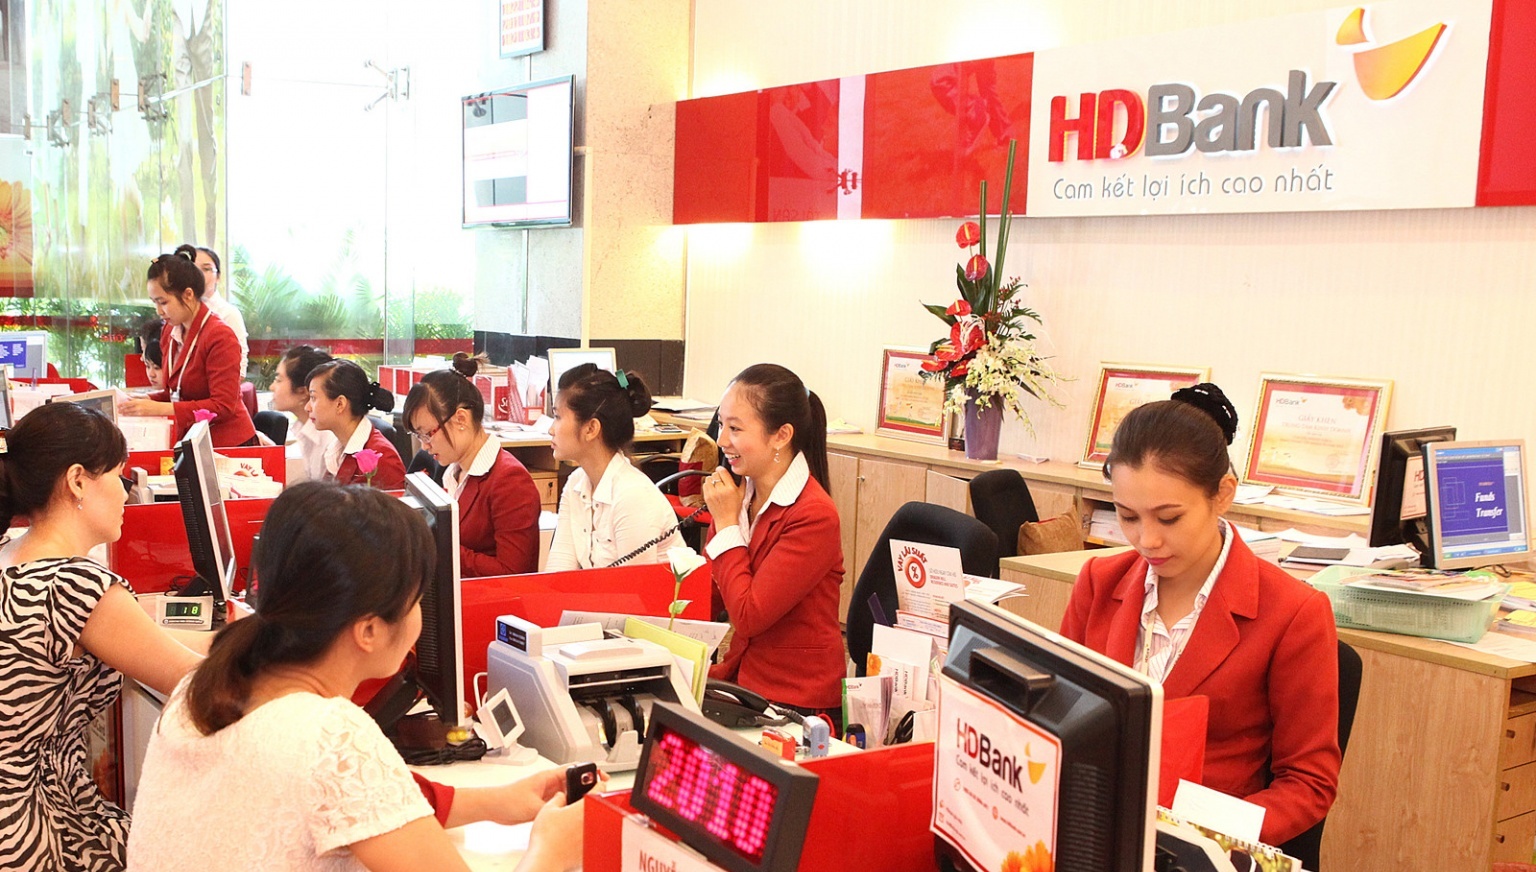 HDBank muốn mua 1 công ty chứng khoán, cung cấp nhiều dịch vụ mới